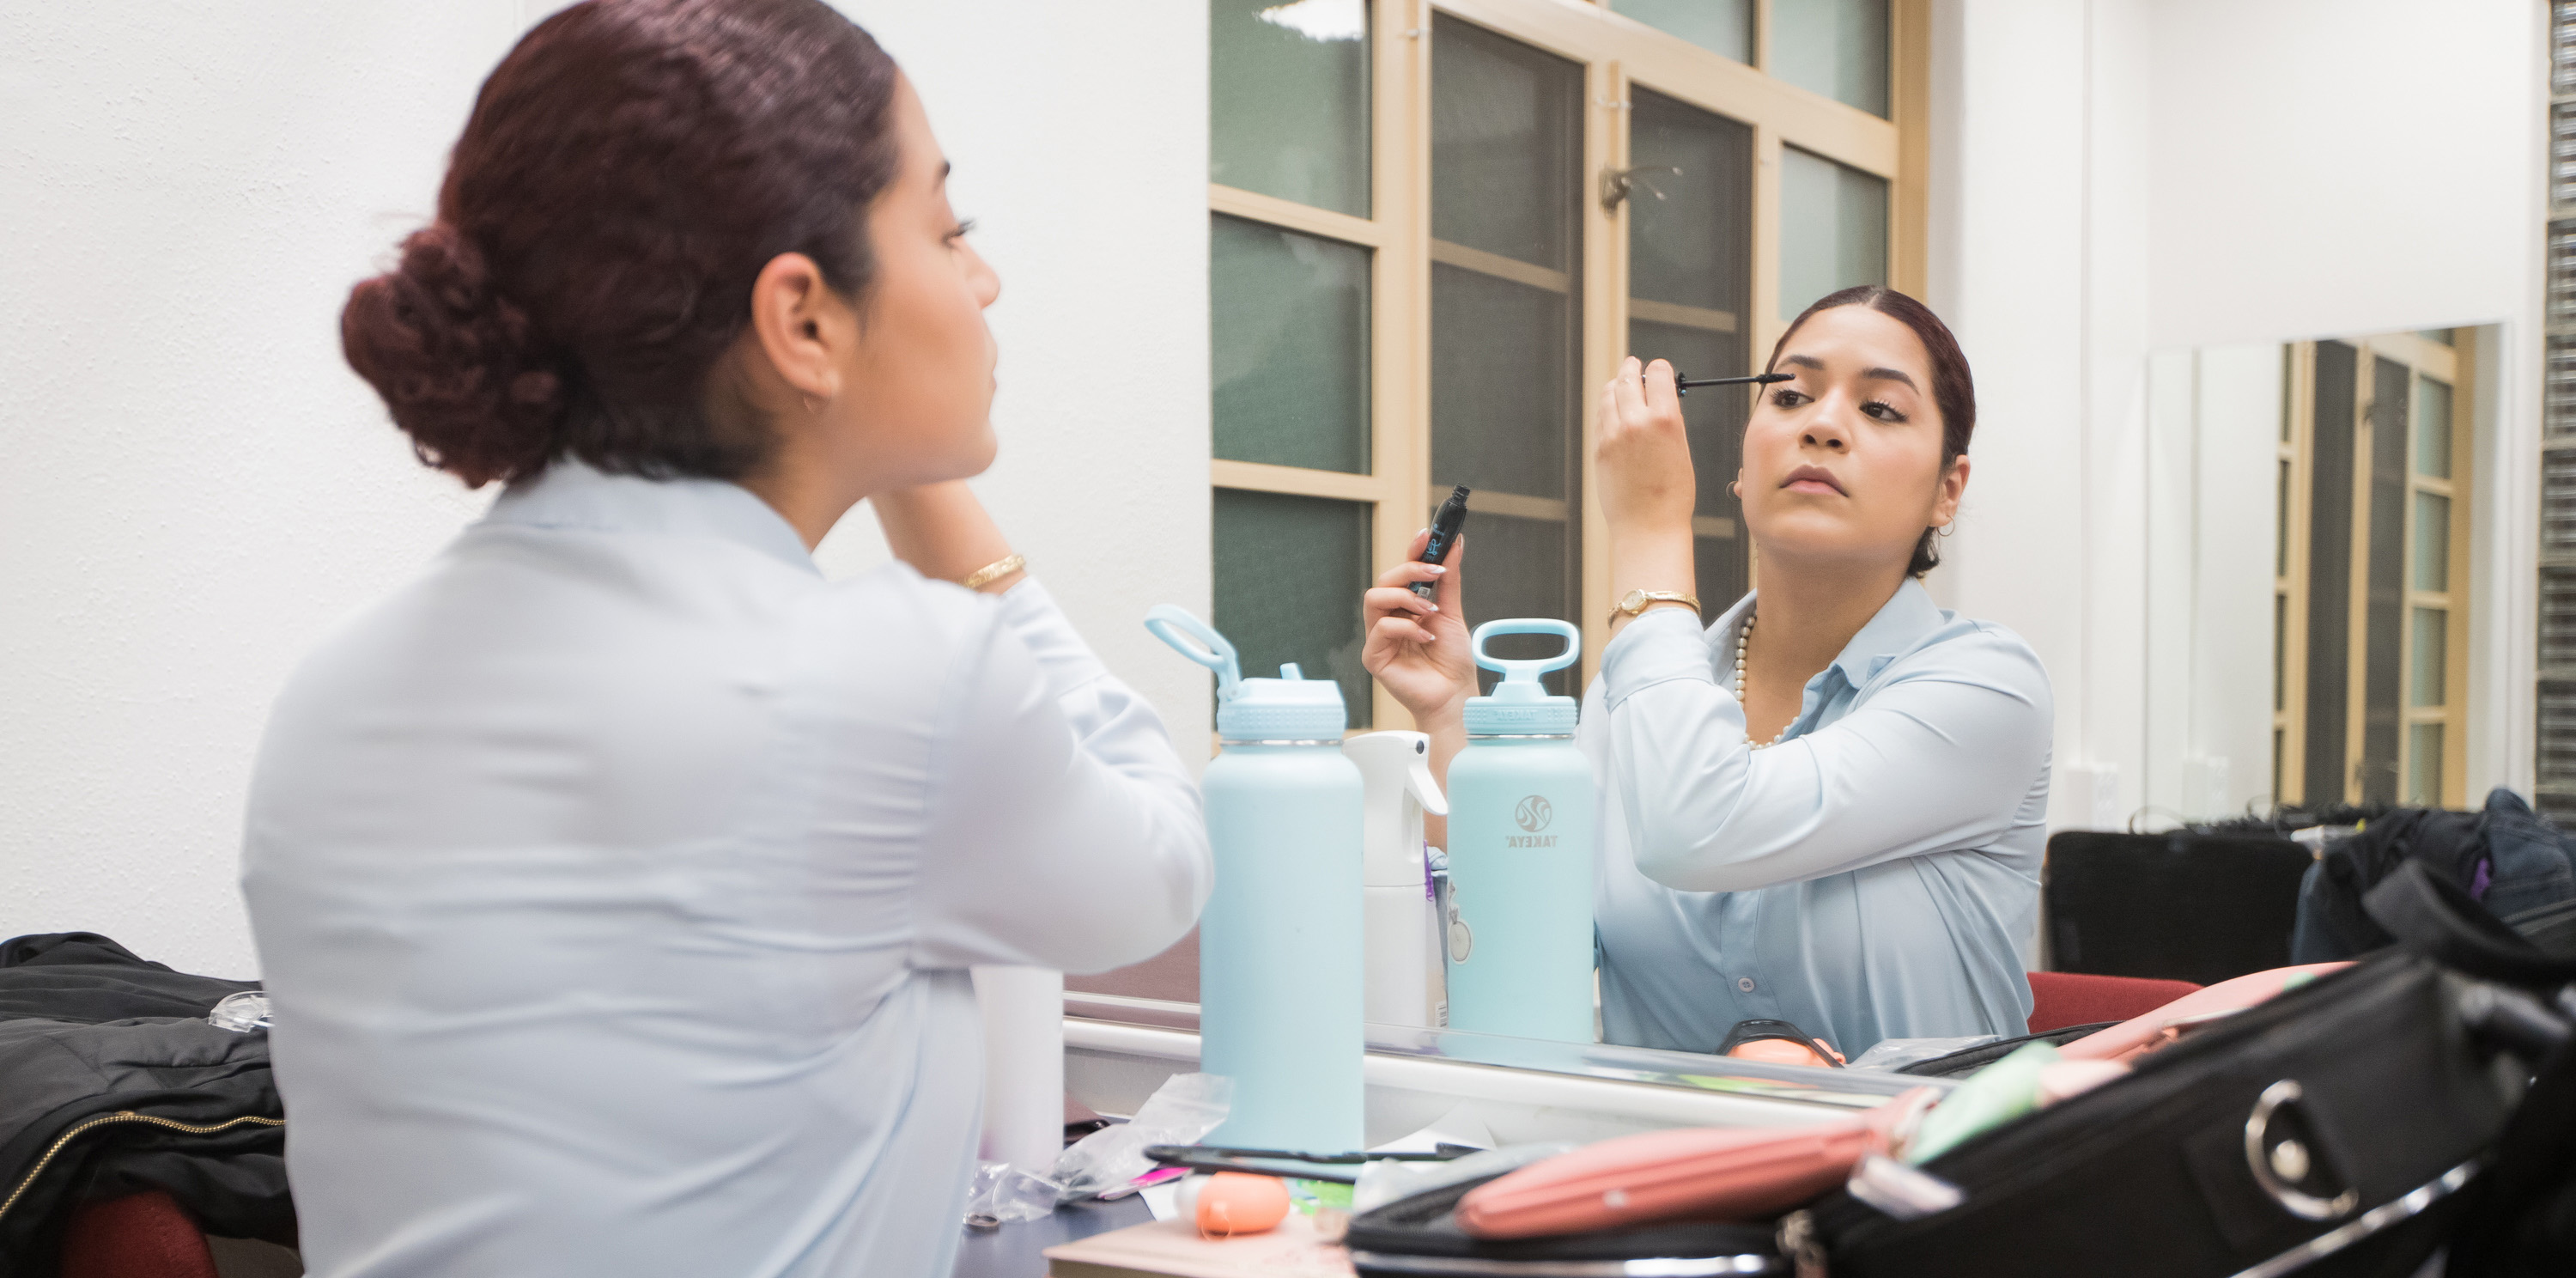 Andrea Camacho maquillándose frente al espejo